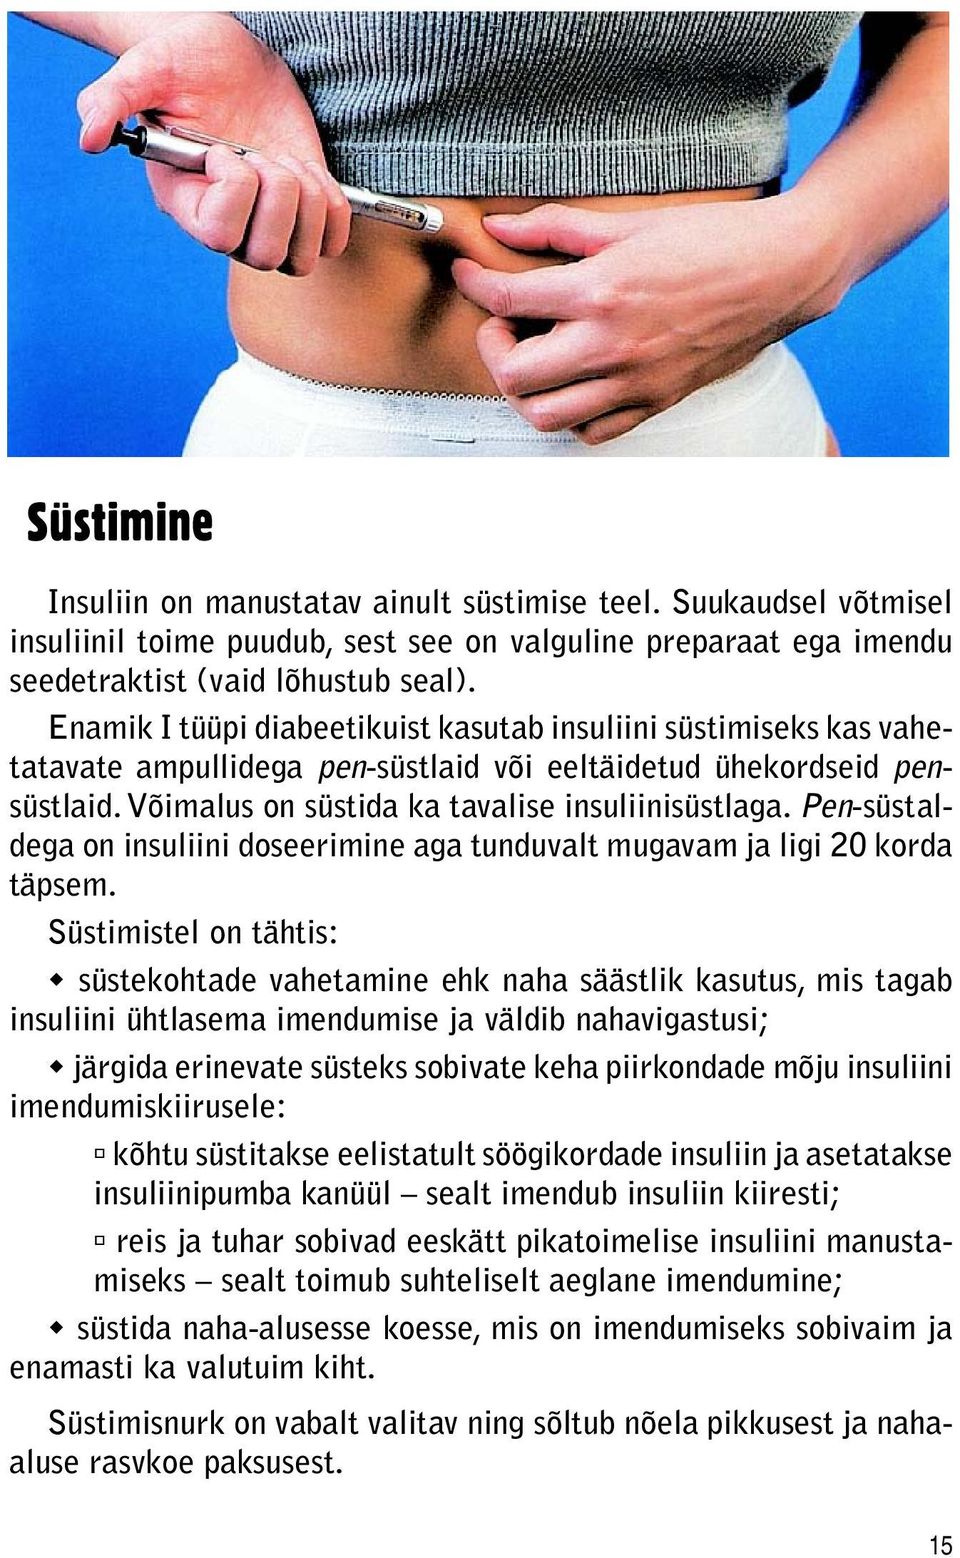 Pen-süstaldega on insuliini doseerimine aga tunduvalt mugavam ja ligi 20 korda täpsem.